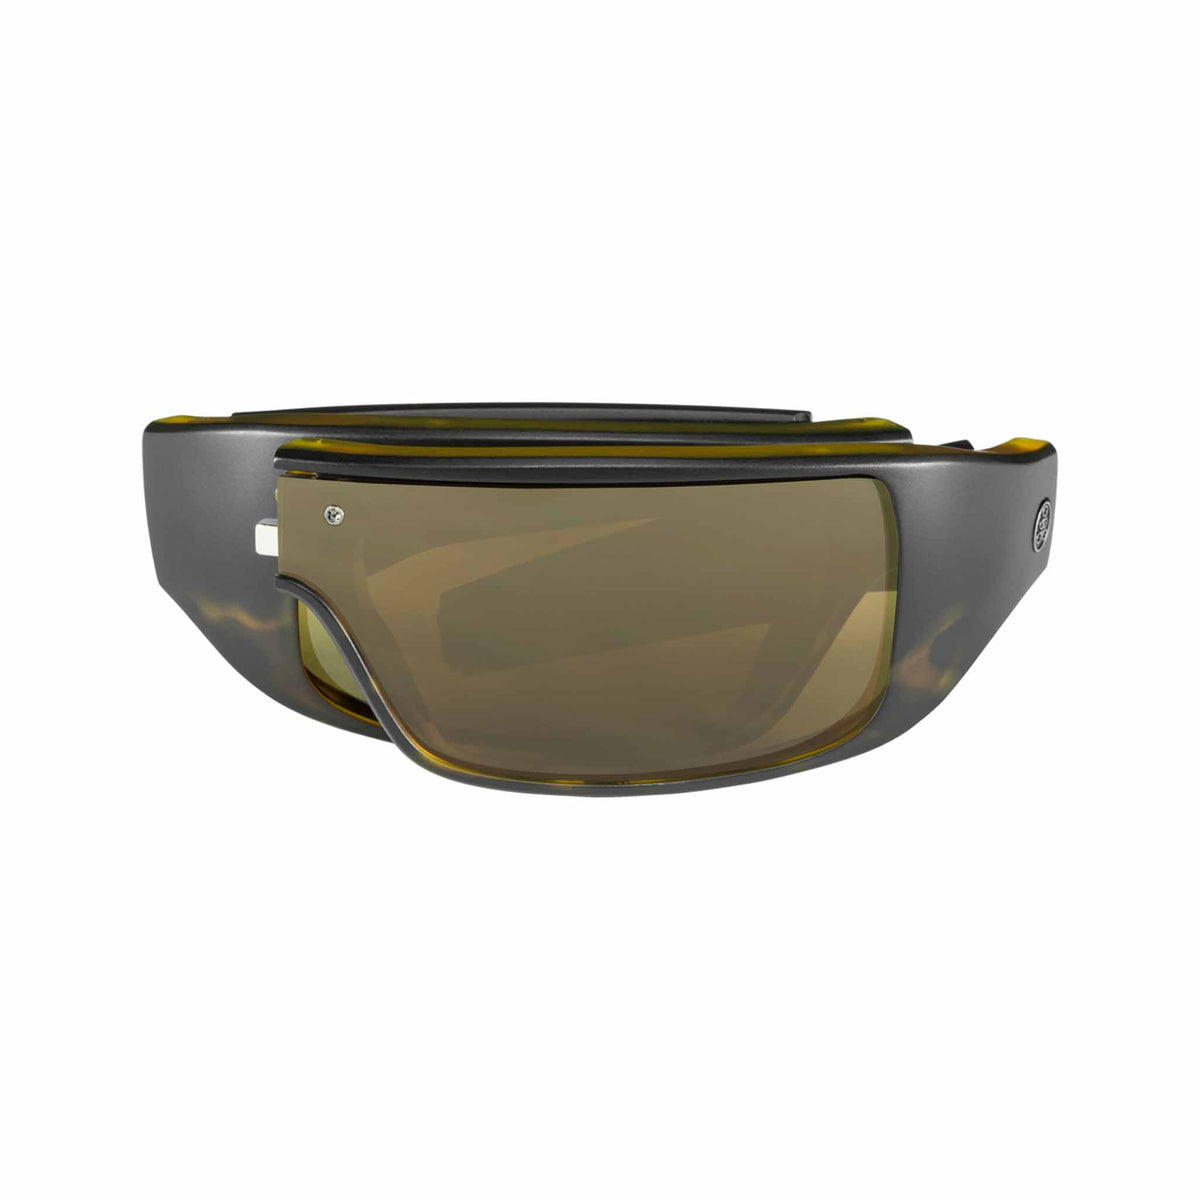 Popticals, Premium Compact Sunglasses, PopGear, 010050-AUNP, Polarized Sunglasses, Matte Black Tortoise, Brown Lenses, Compact View